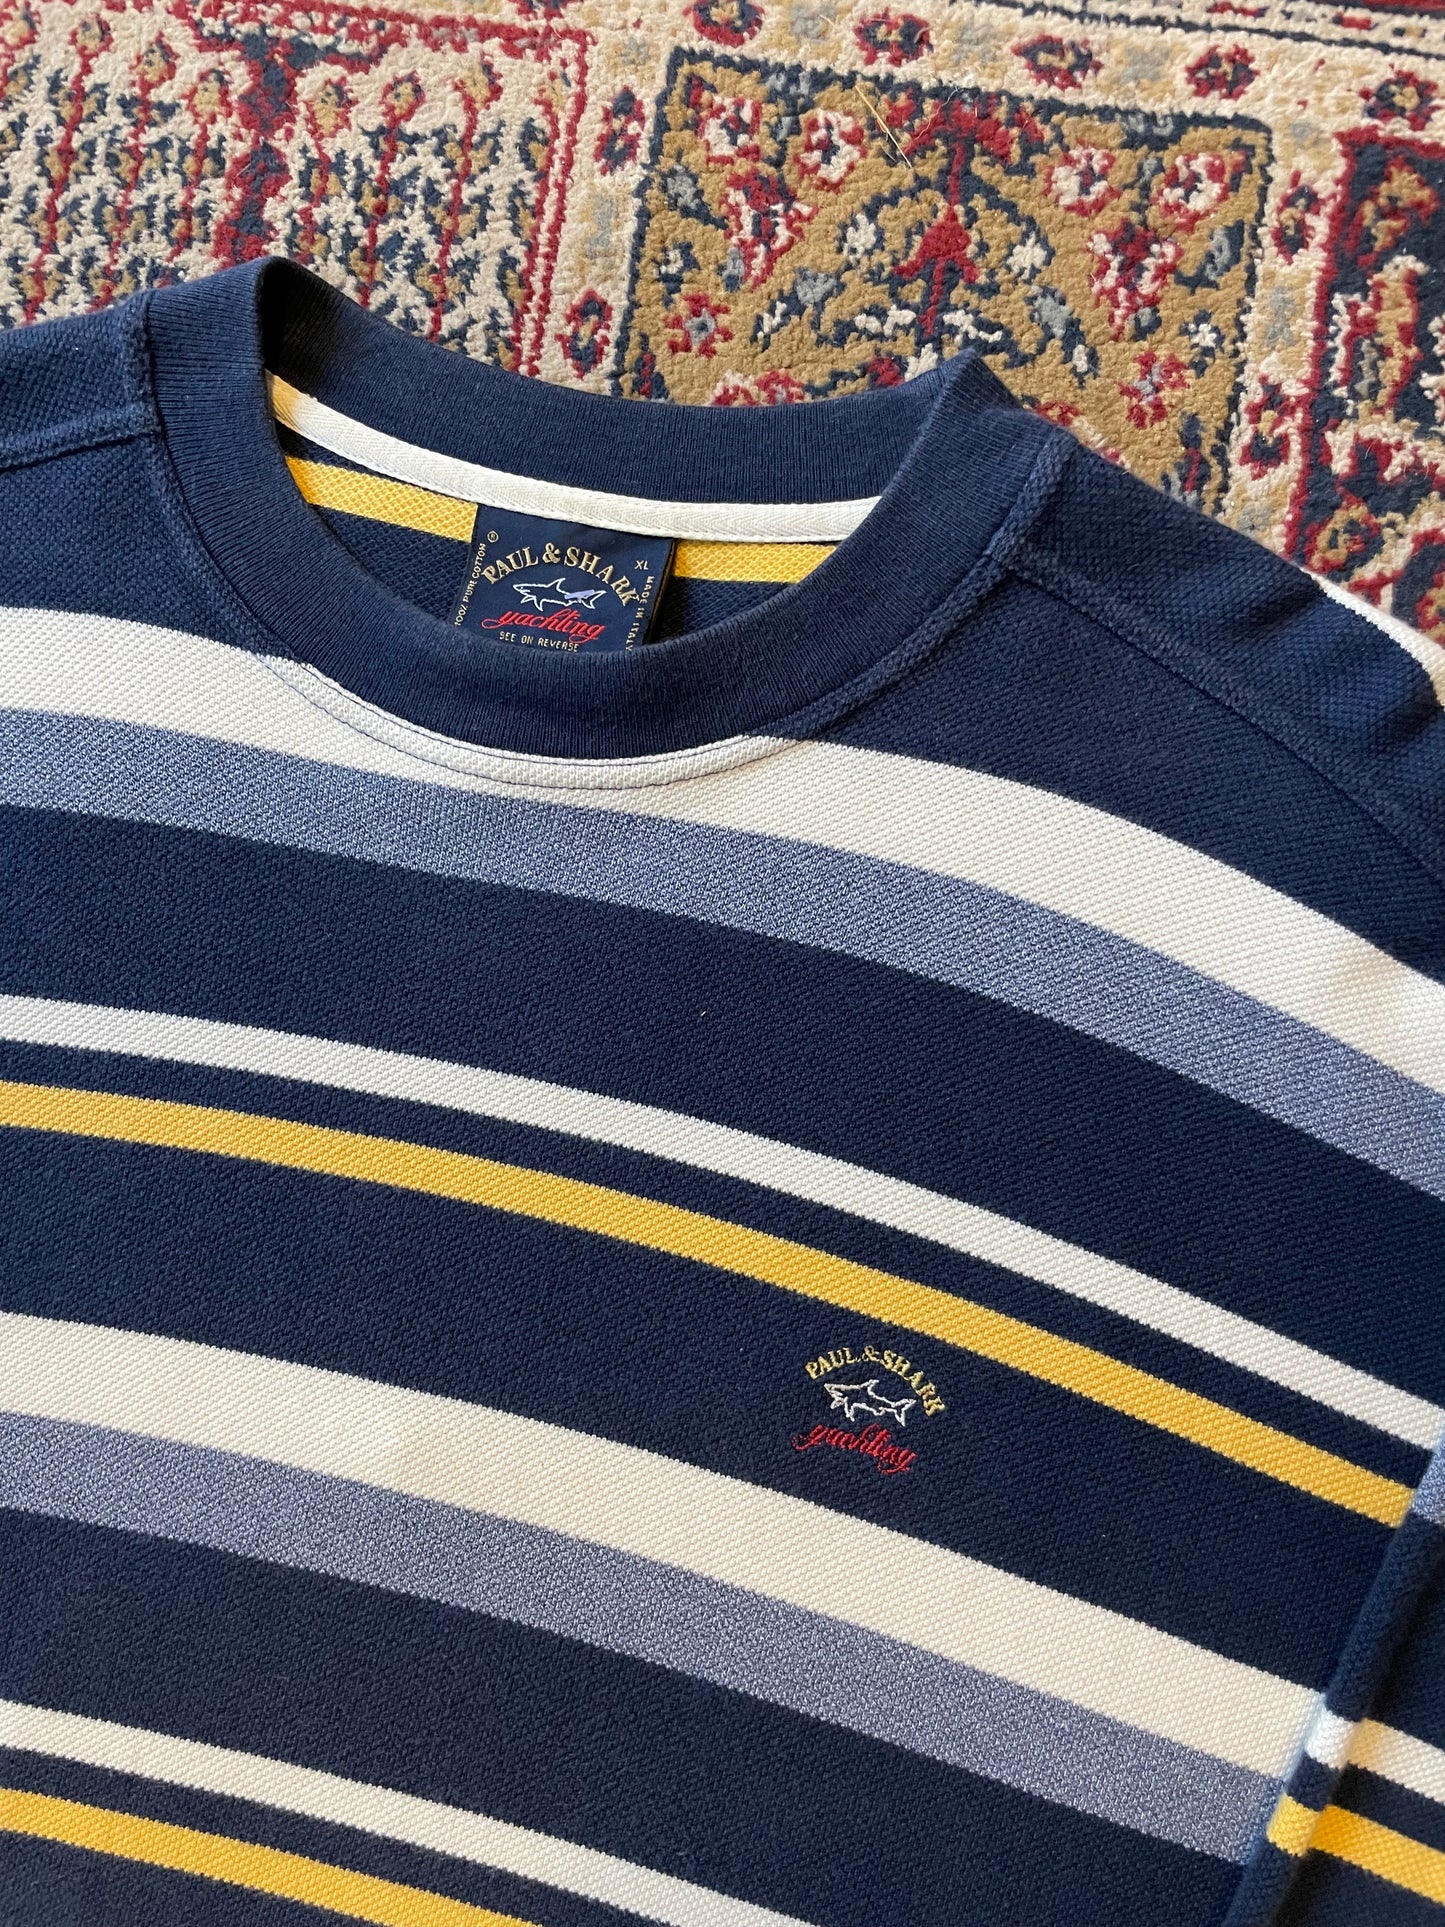 90s Paul & Shark Stripe sweatshirt (XL)